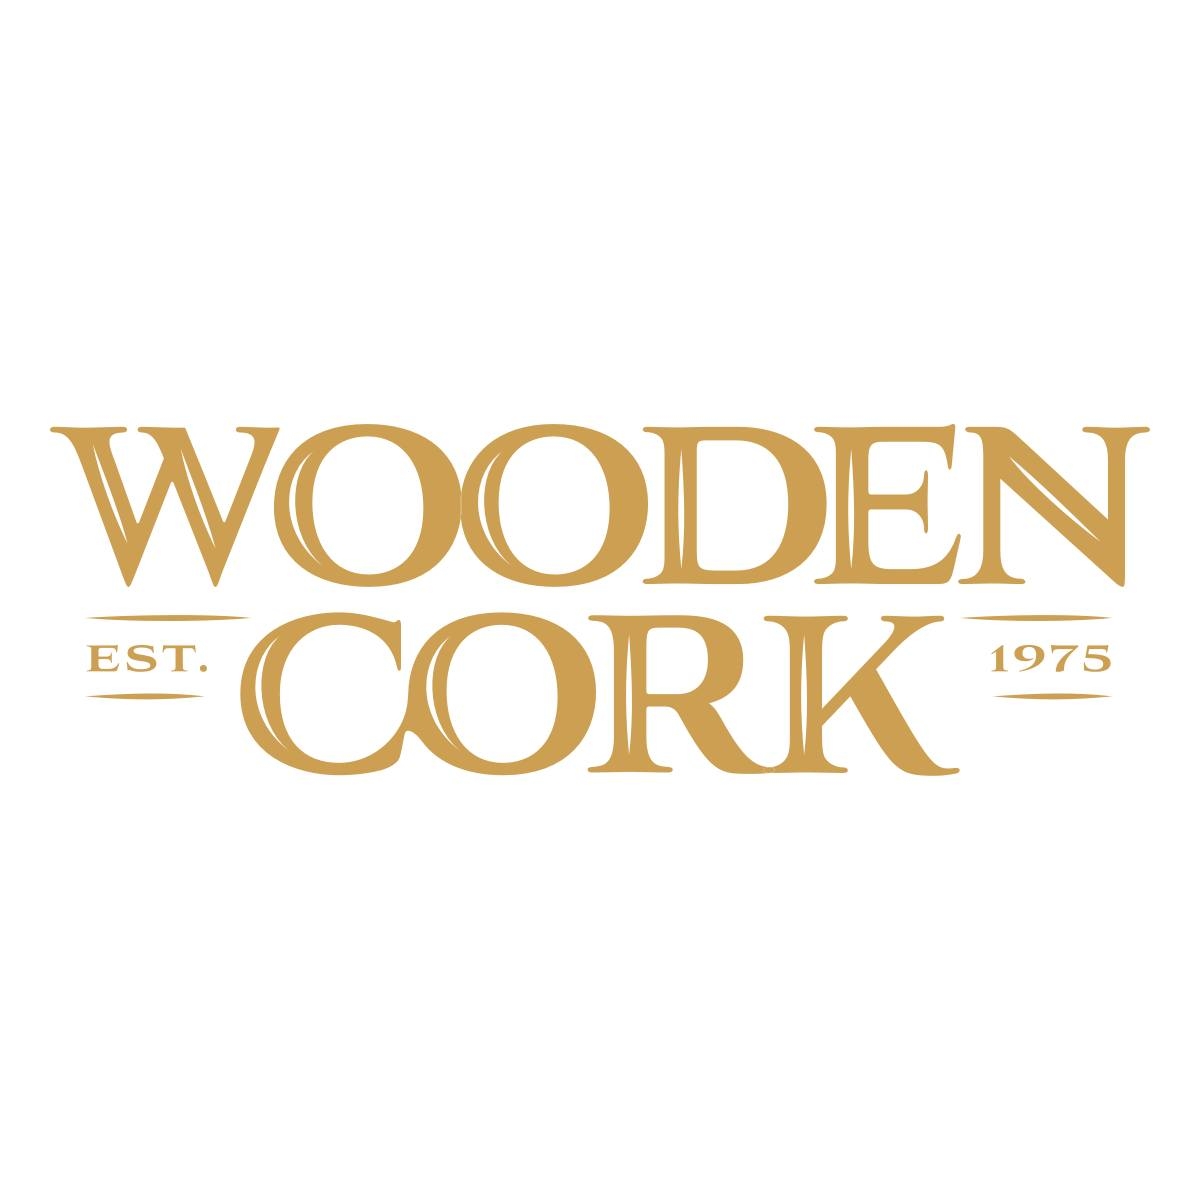 Wooden Cork